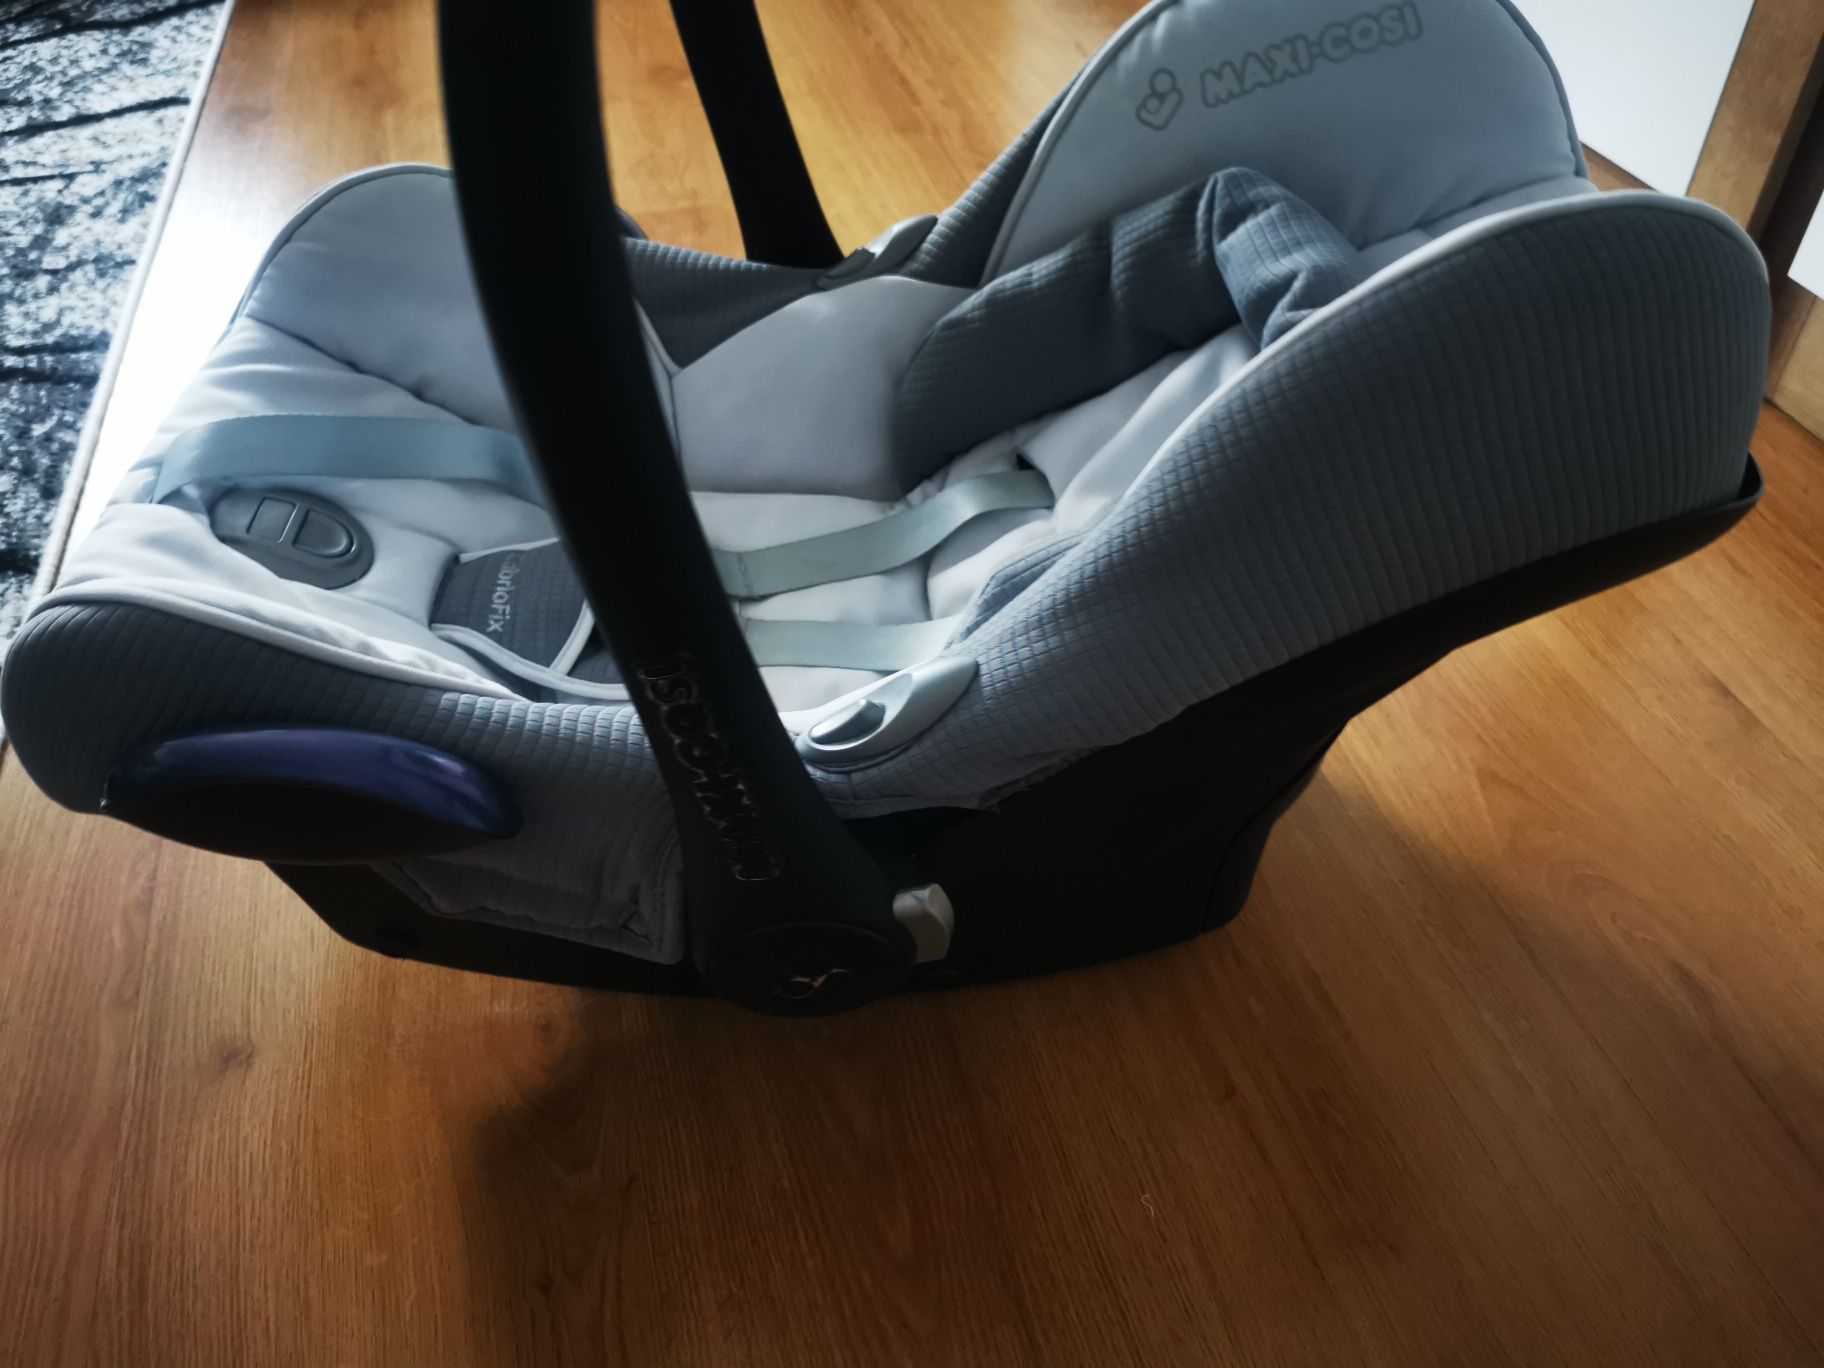 Maxi Cosi fotelik samochodowy niemowlęcy 0-18 miesięcy